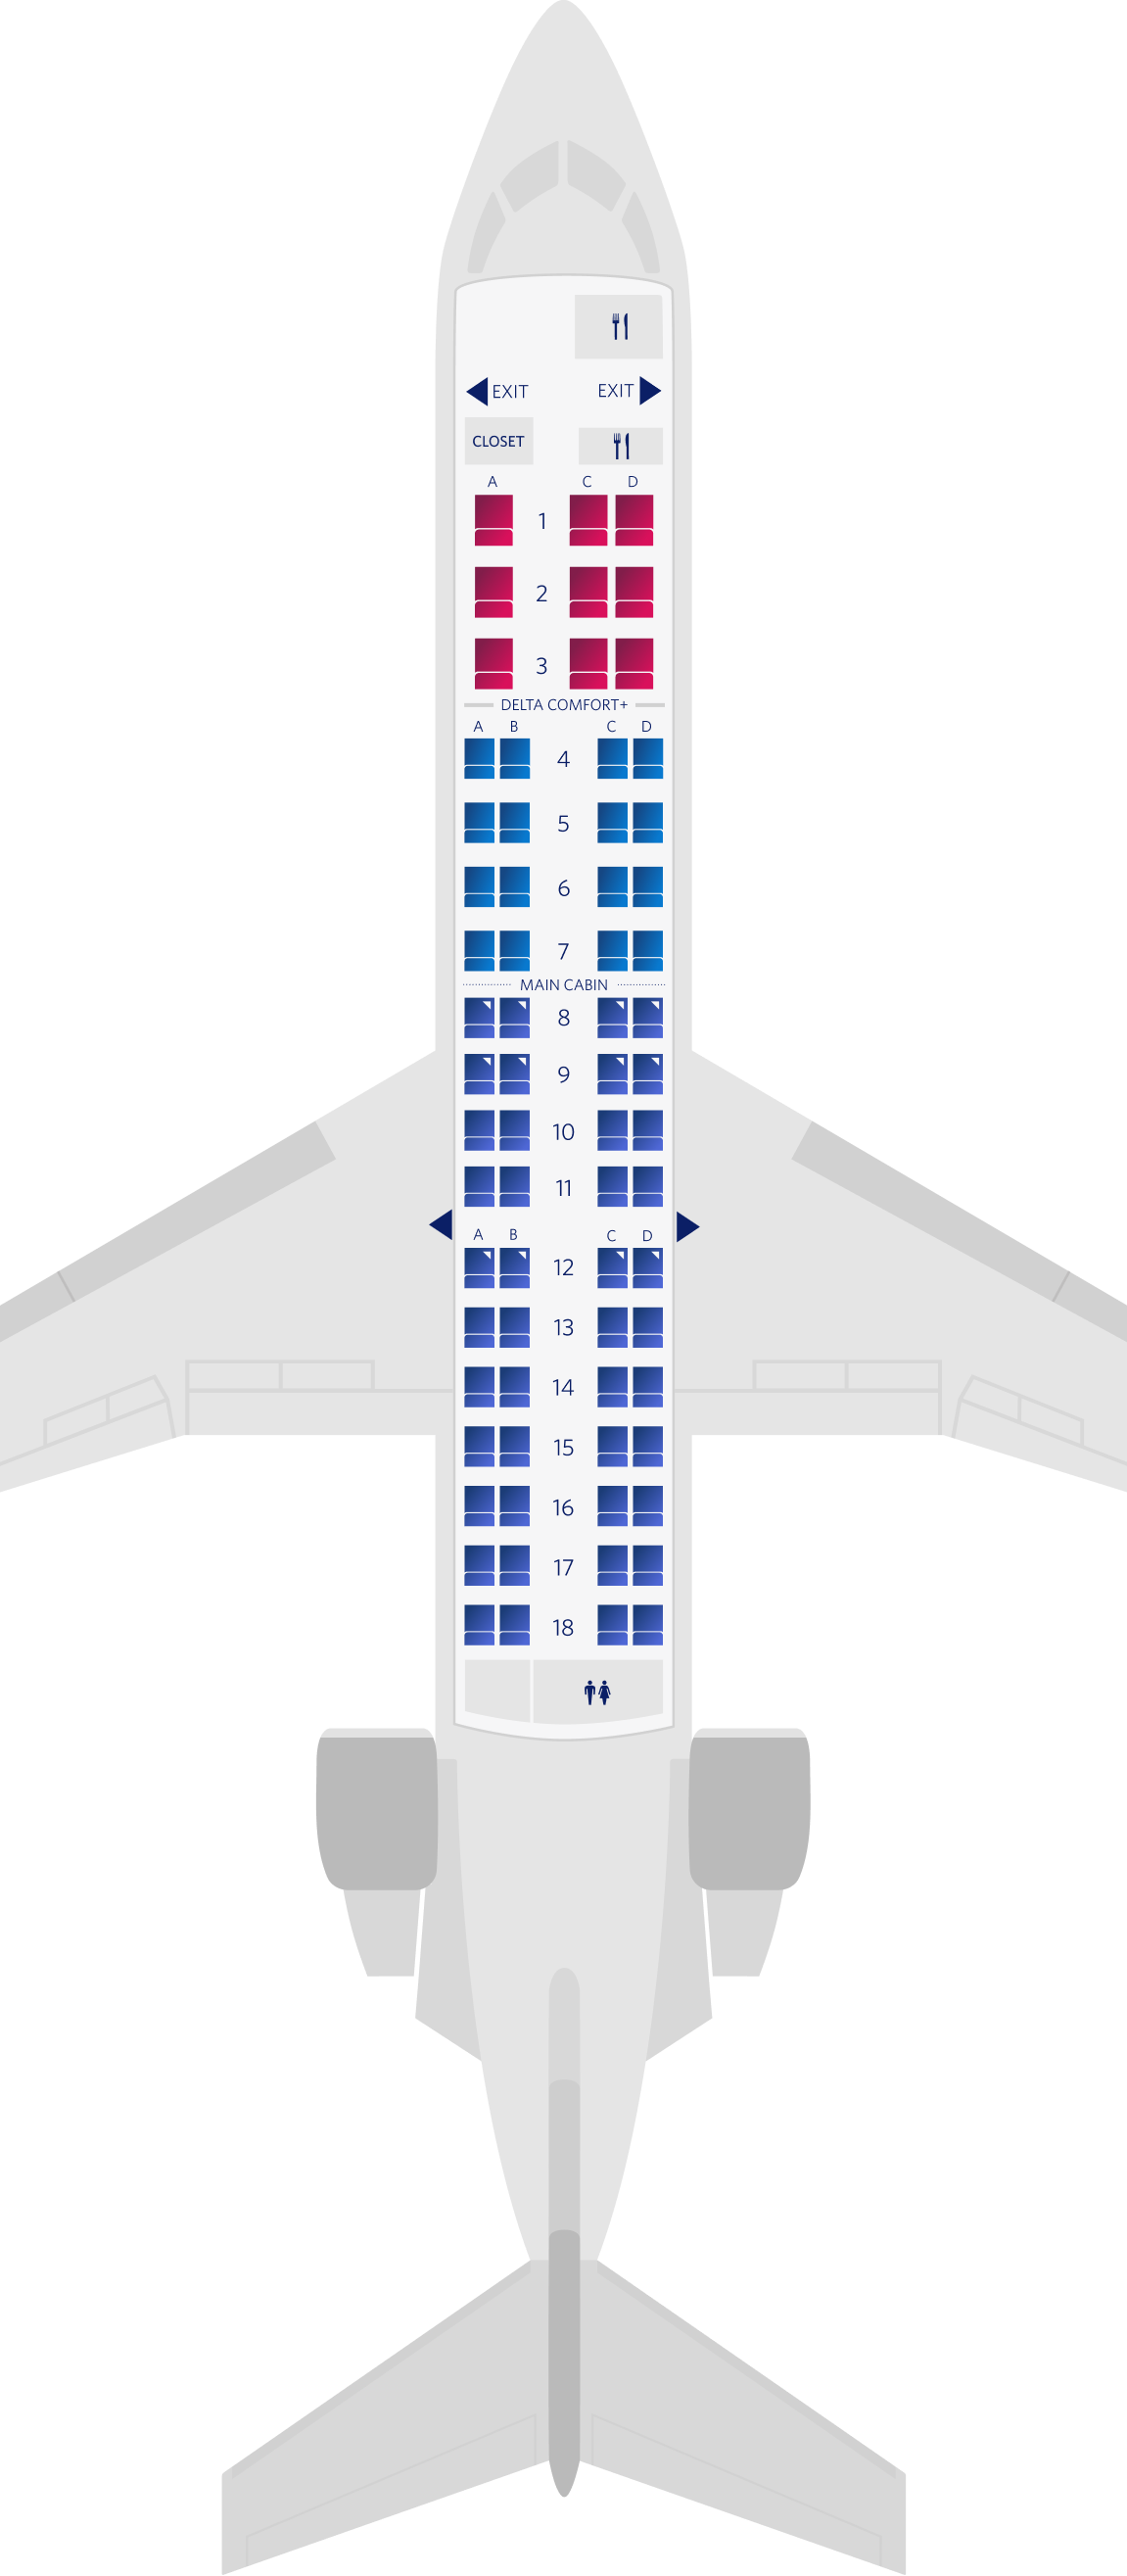 Configuration des sièges du Bombardier CRJ-700-RJ7 